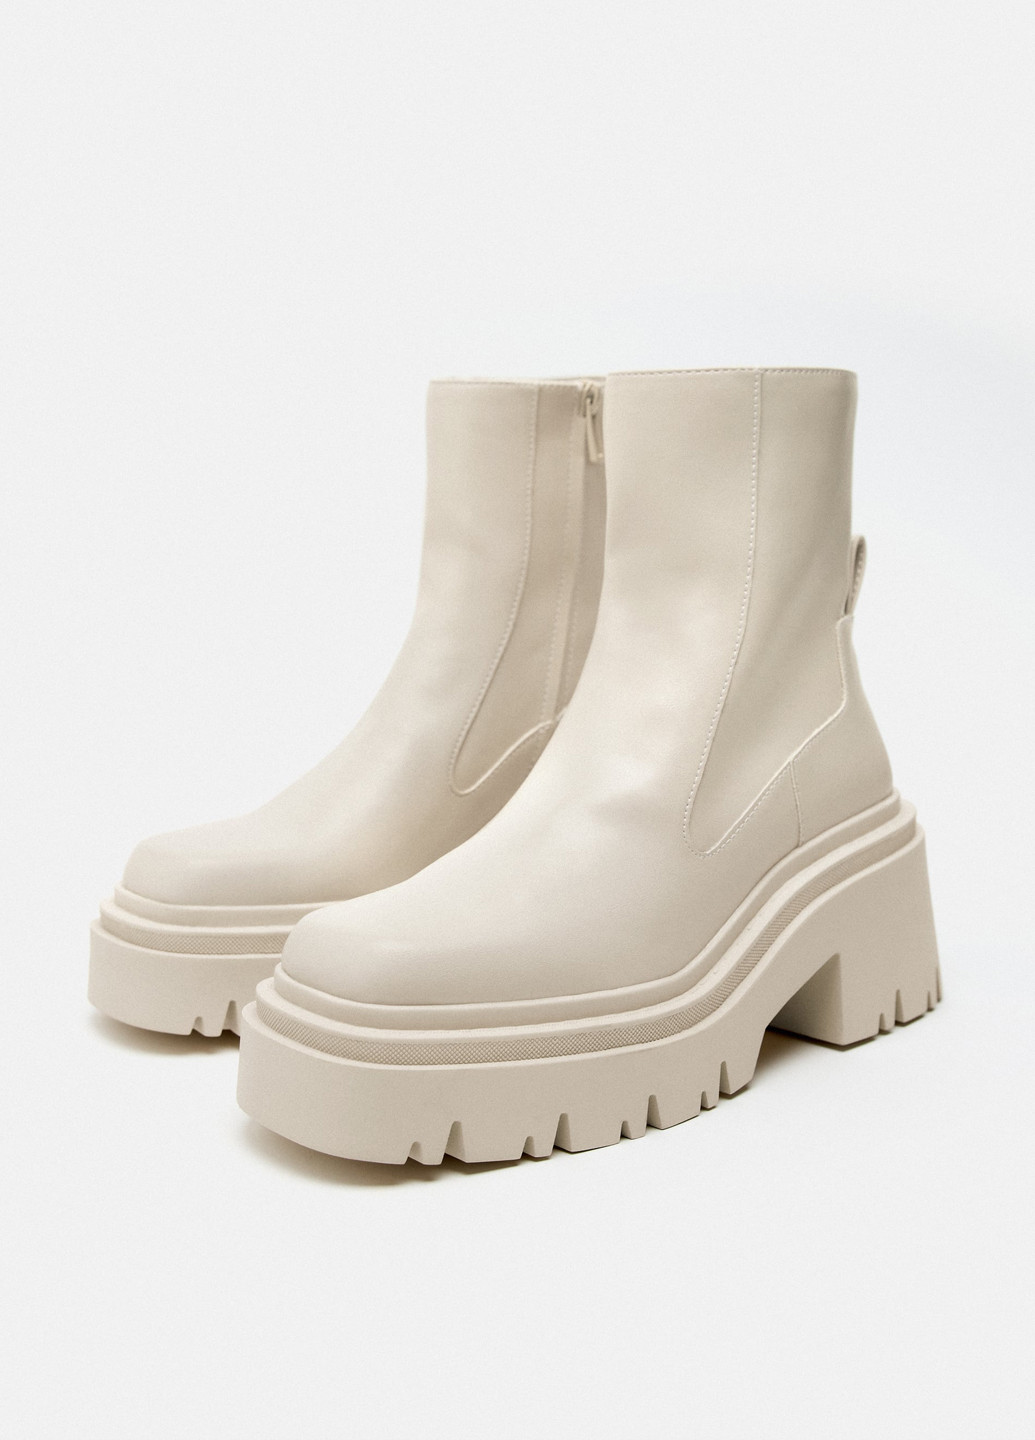 Осенние ботинки челси Zara с белой подошвой из искусственной кожи